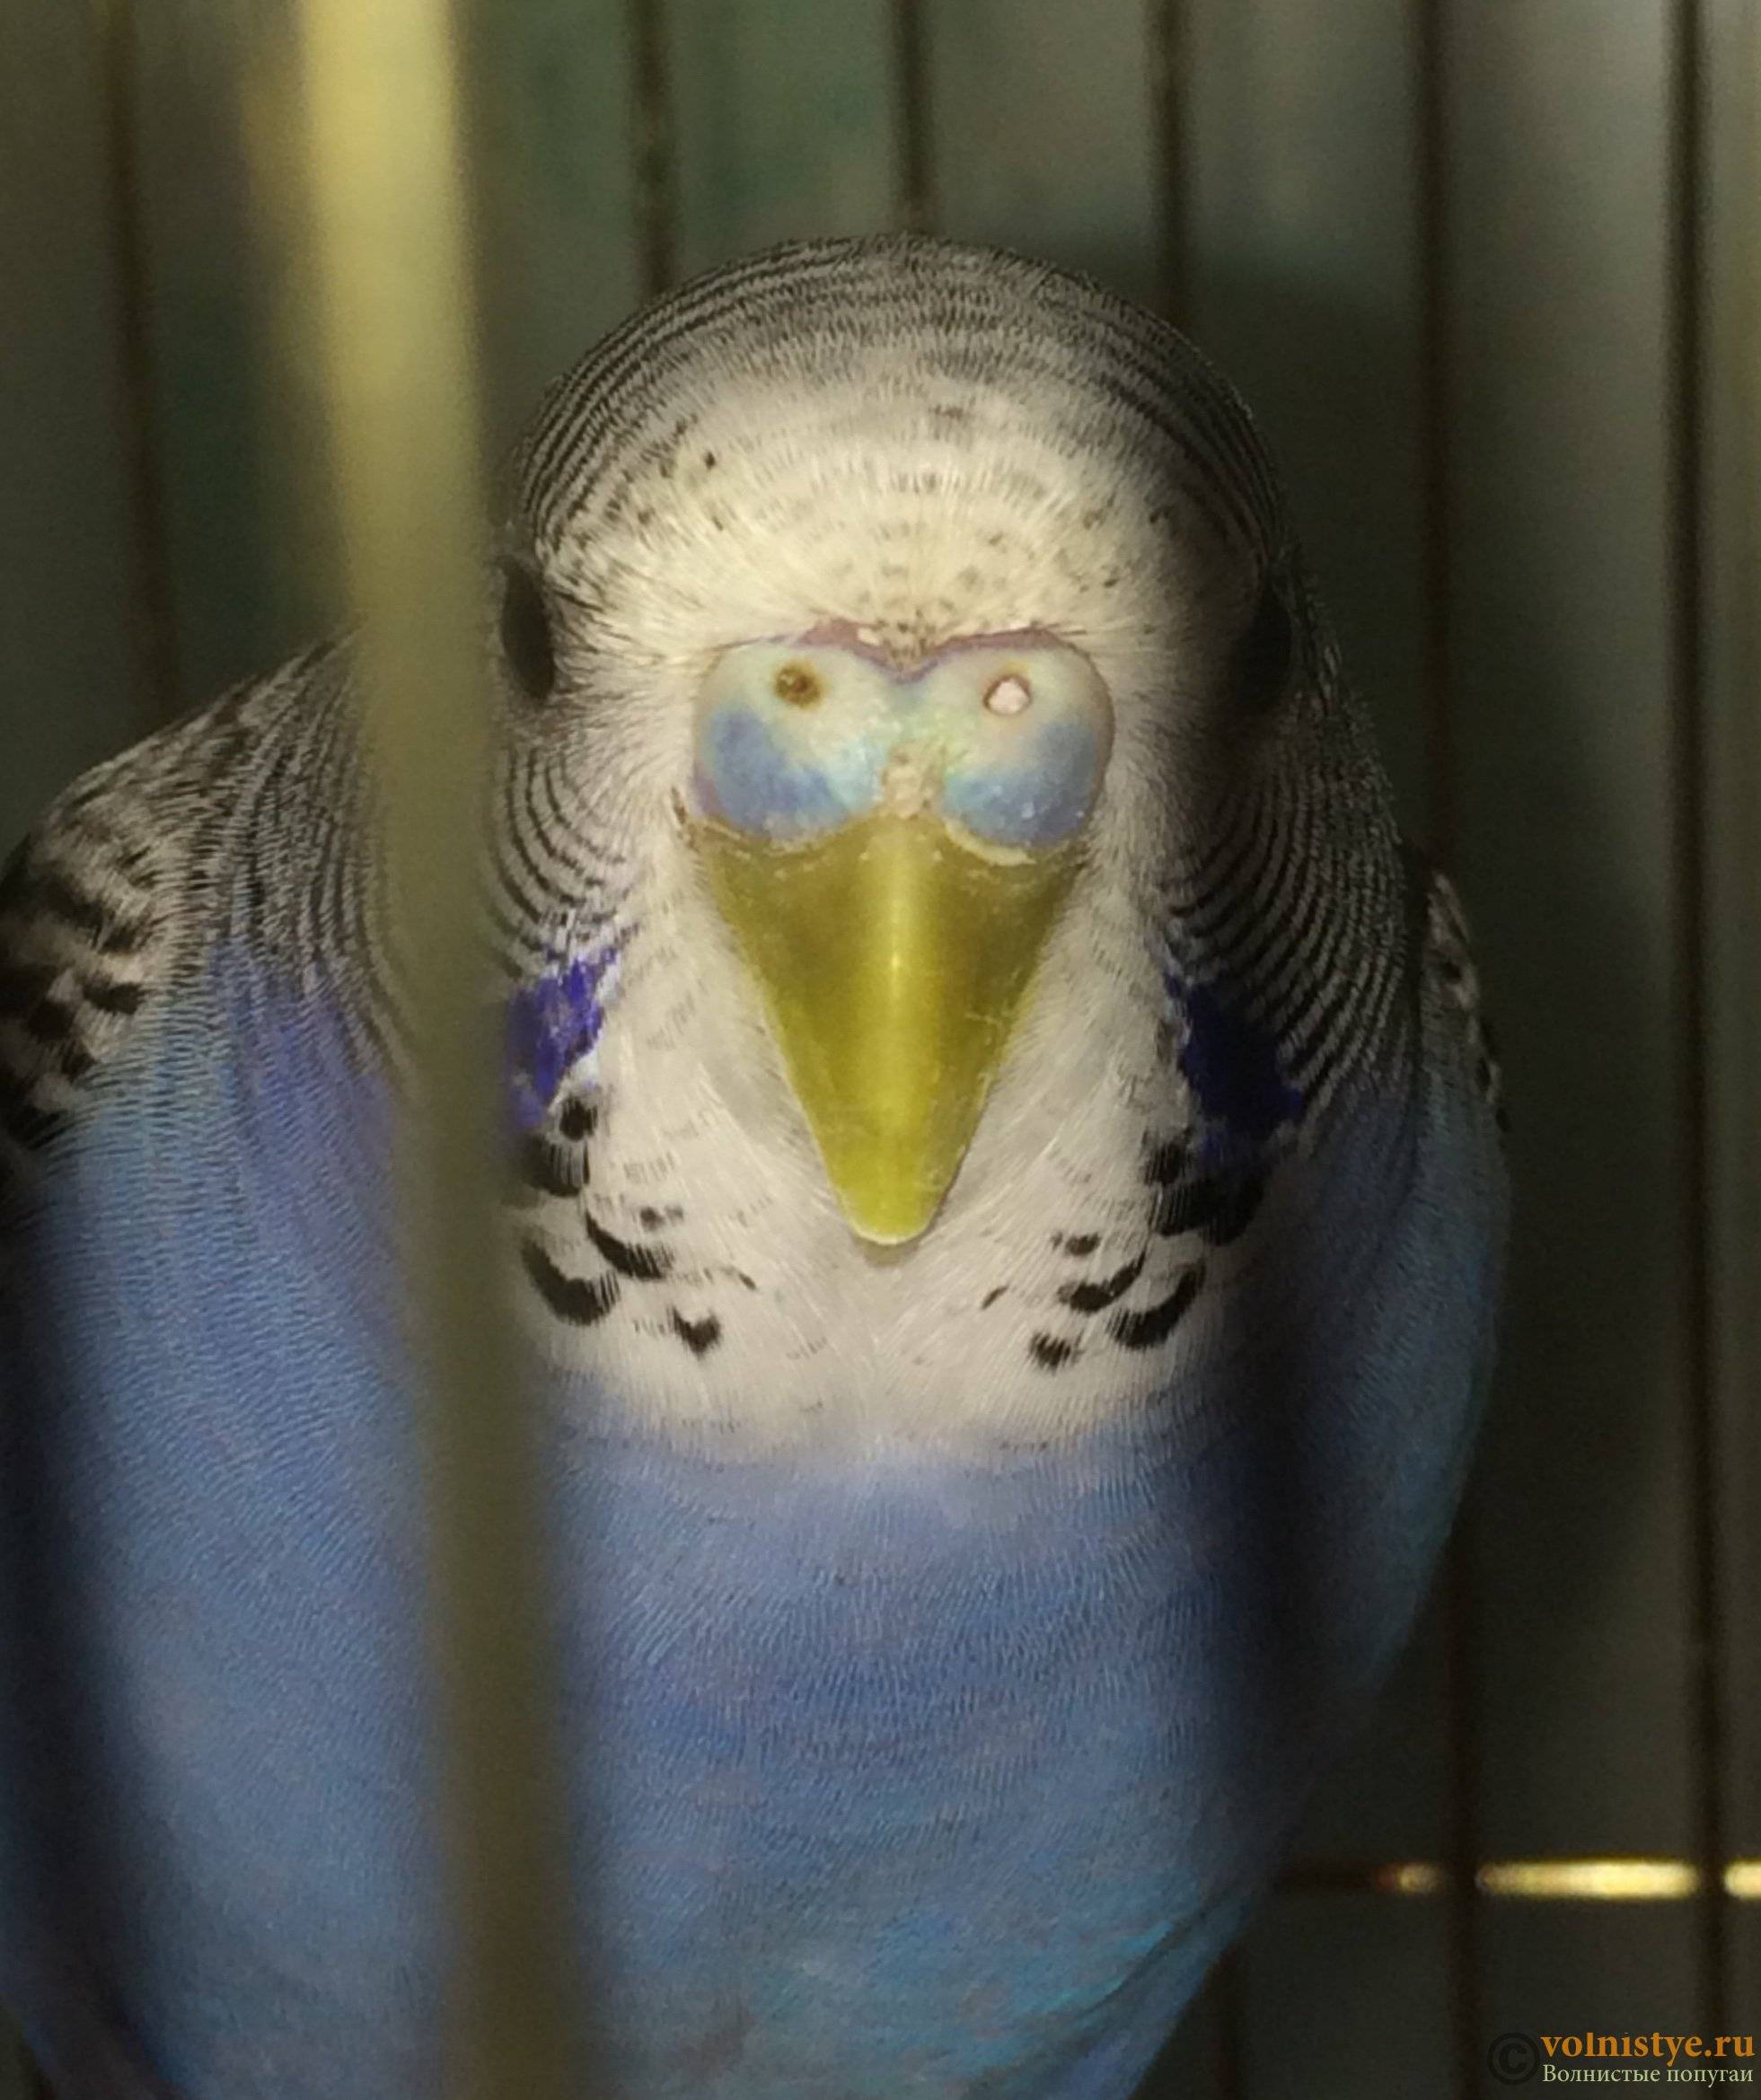 Волнистые попугаи: как приручить к рукам и сделать так, чтобы питомец перестал вас бояться? :: syl.ru